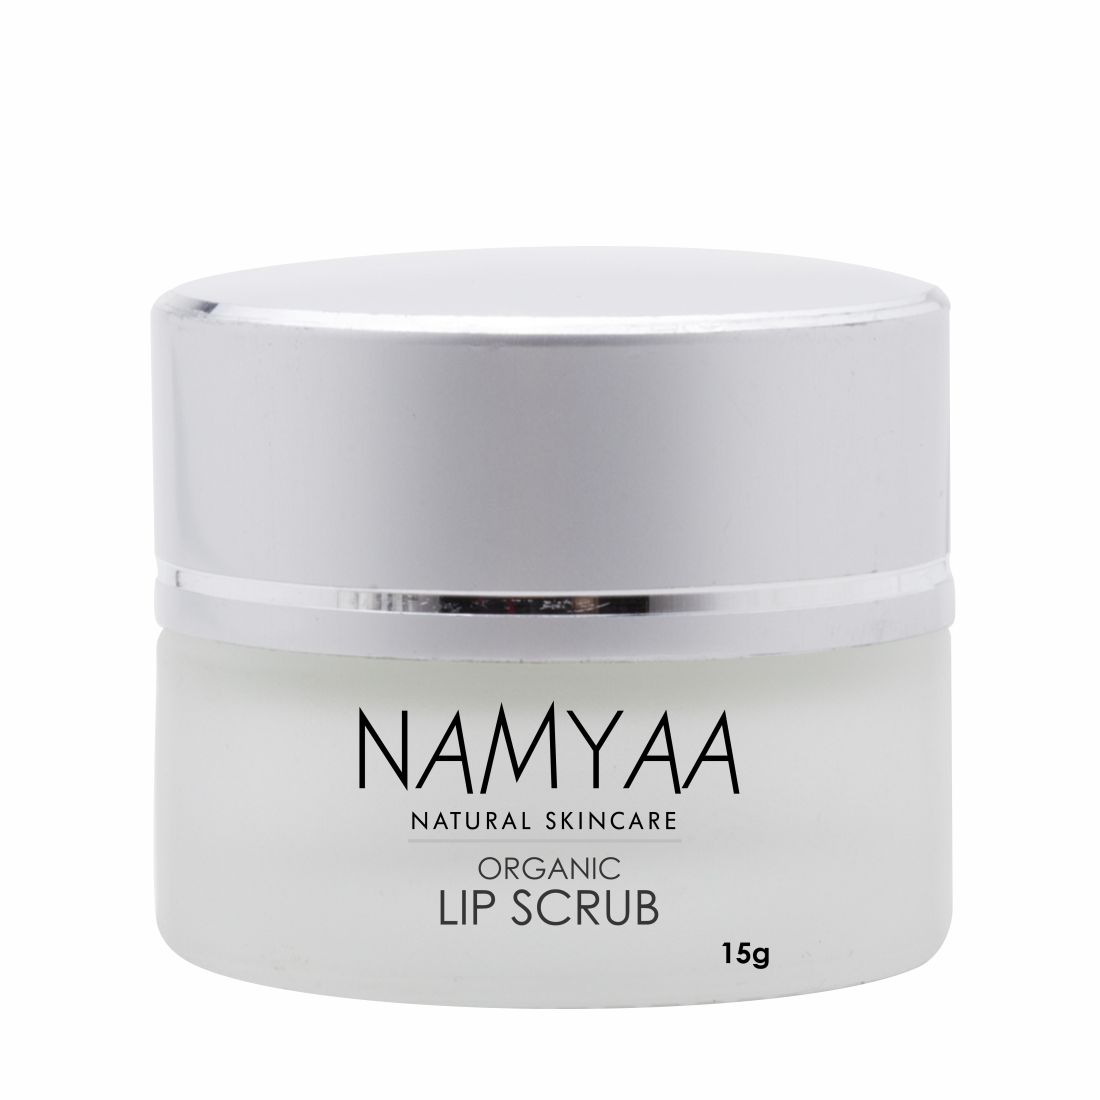 Scrub it with Namyaa’s Organic Lip Scrub